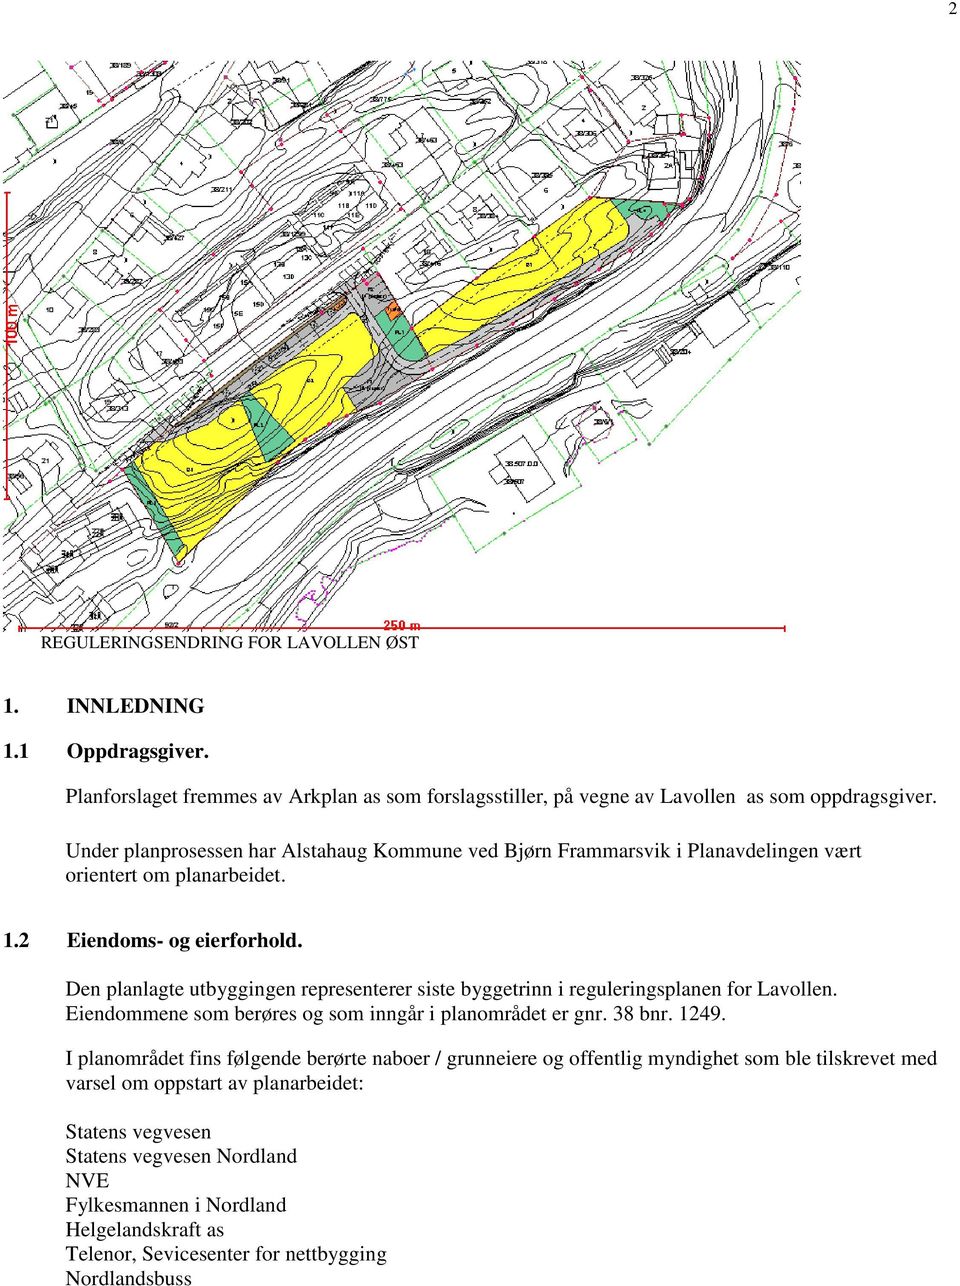 Den planlagte utbyggingen representerer siste byggetrinn i reguleringsplanen for Lavollen. Eiendommene som berøres og som inngår i planområdet er gnr. 38 bnr. 1249.